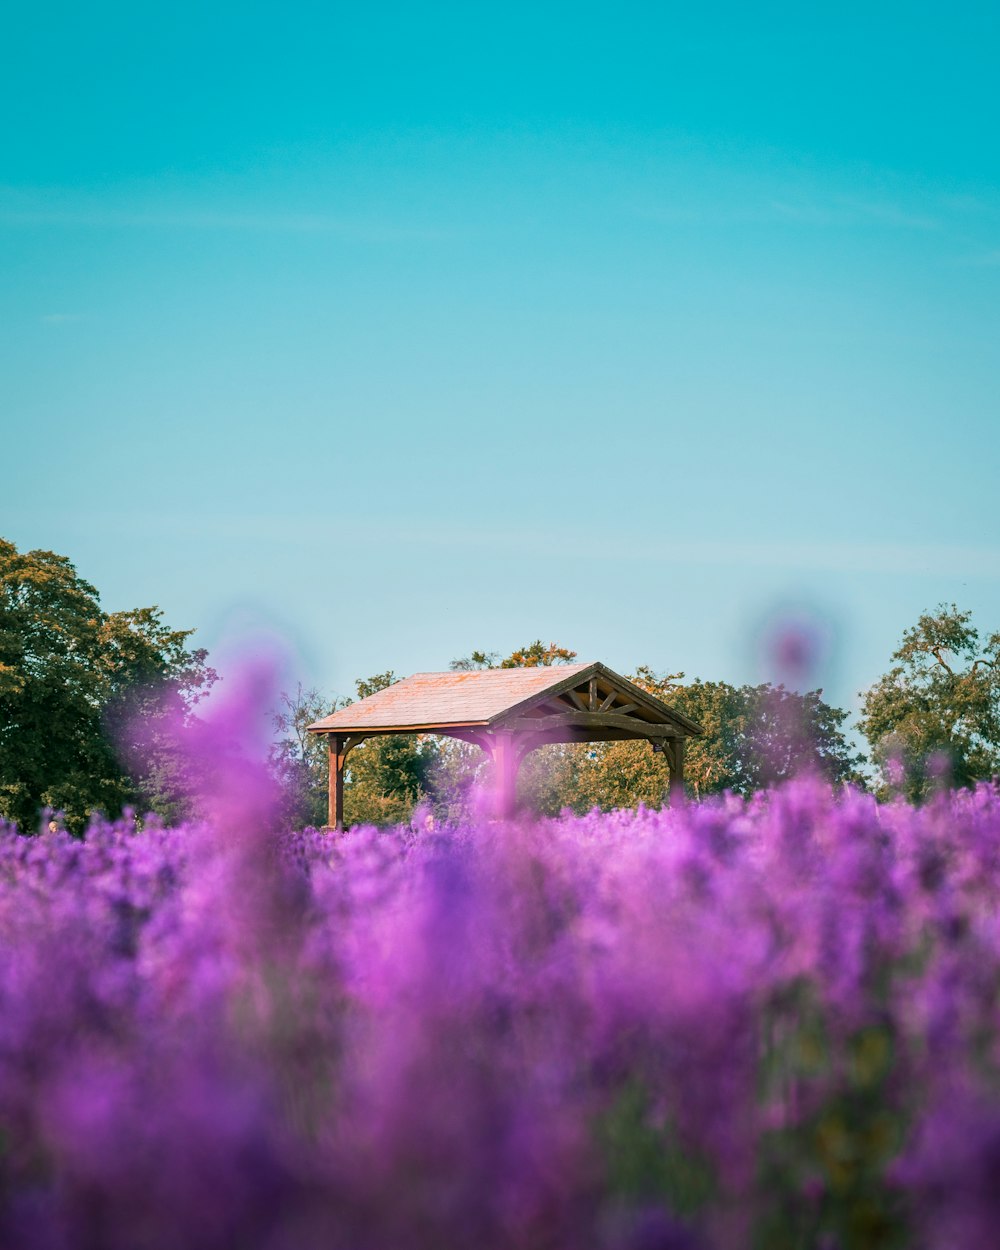 a gazebo in a field of purple flowers under a blue sky